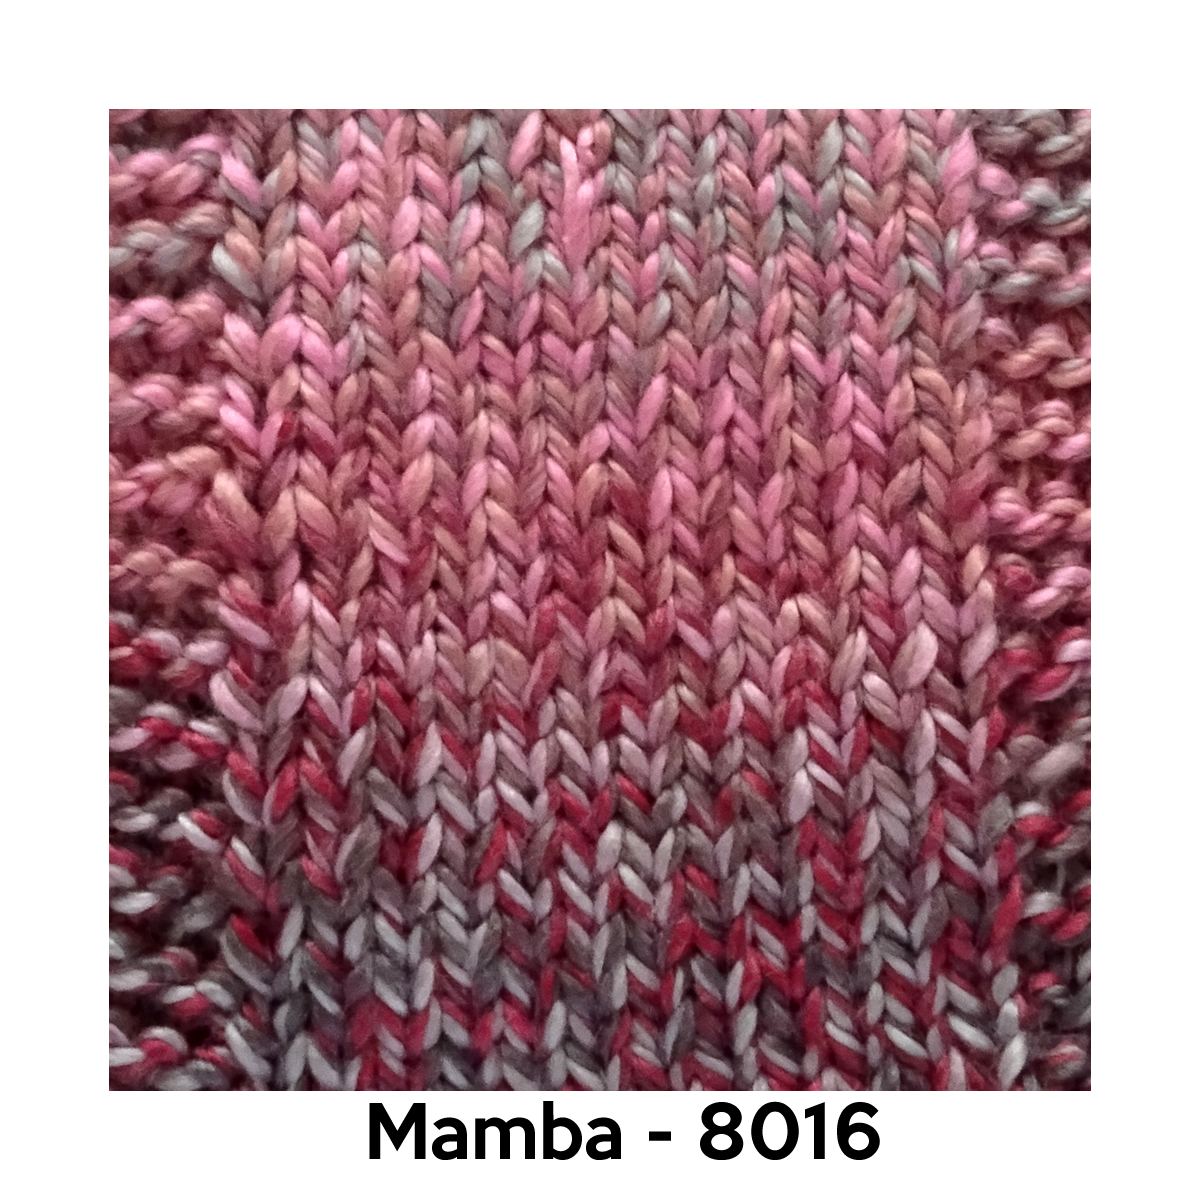 Mamba - 8016